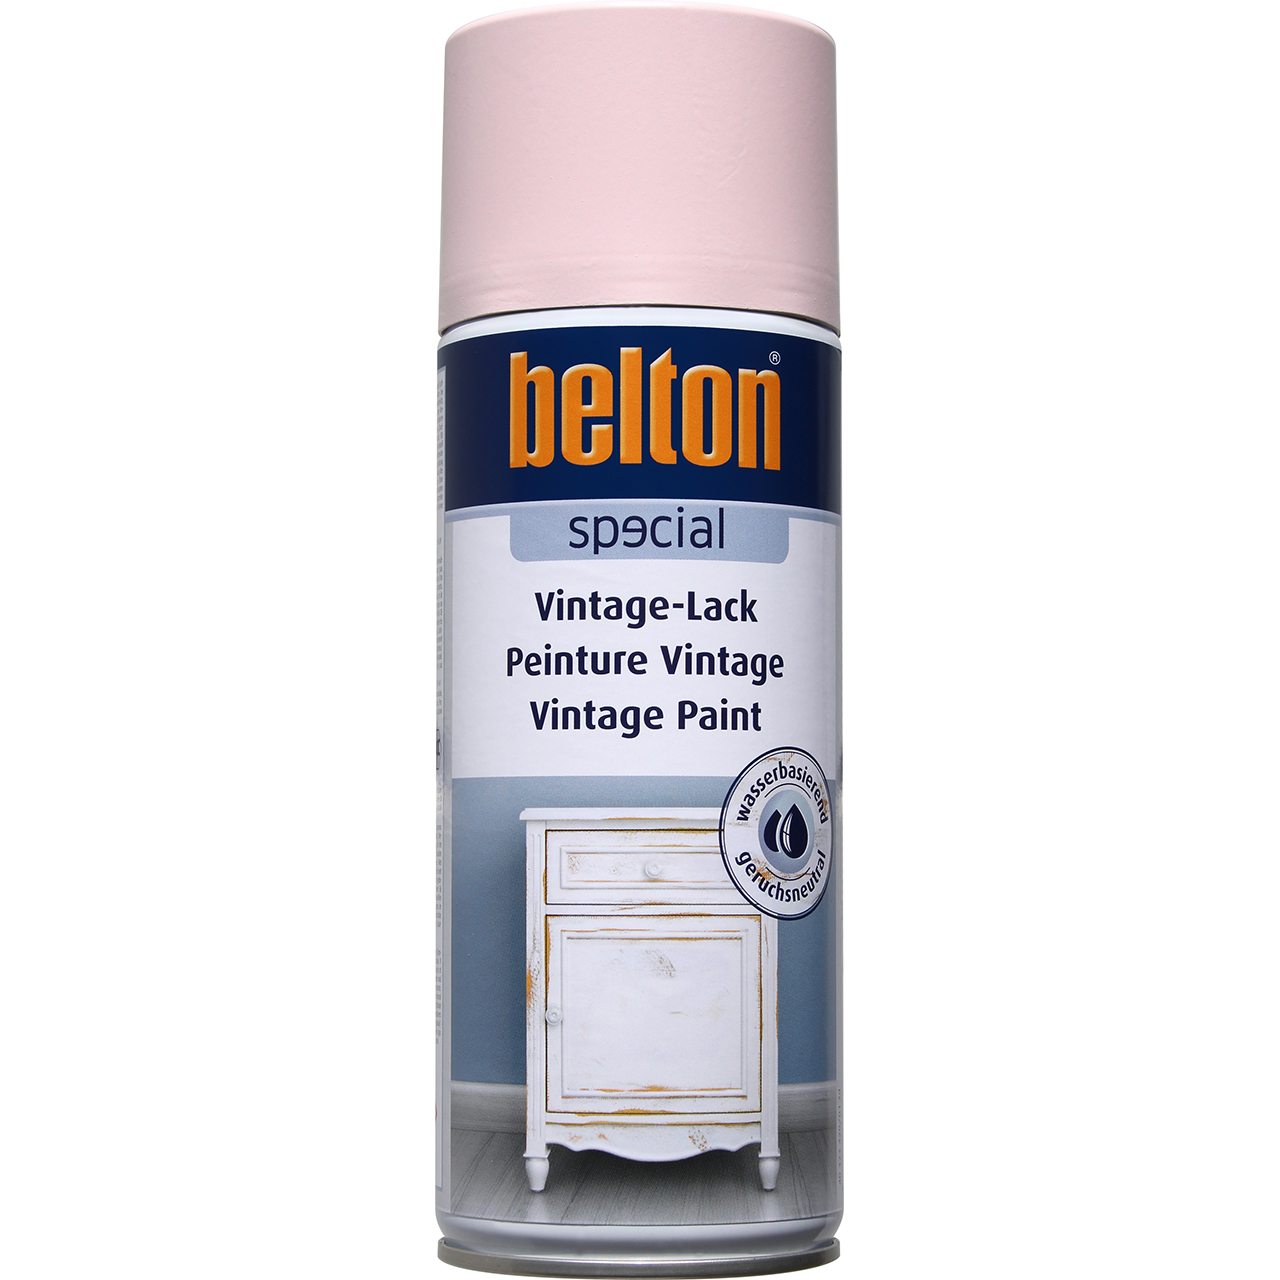 belton Special Vintage-Lack rostrot, 400ml